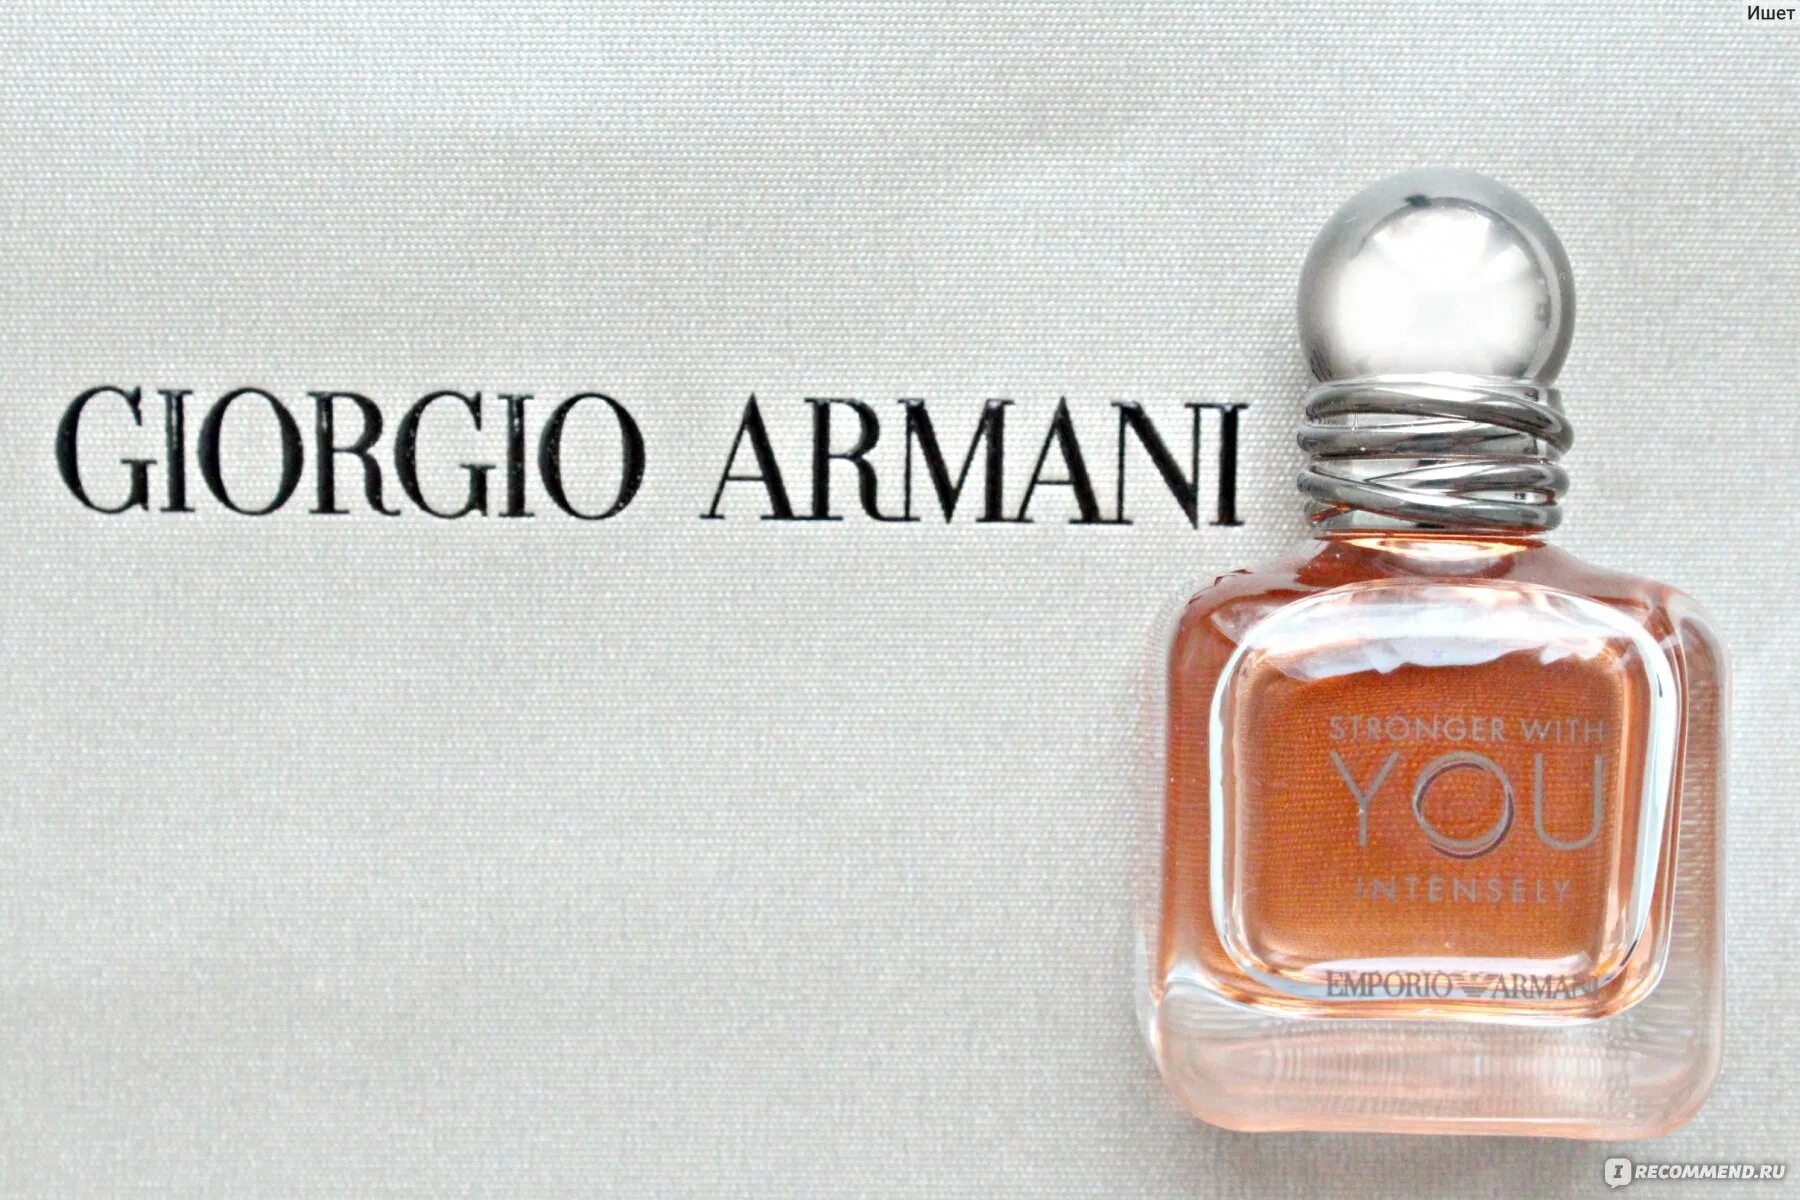 Stronger with you only. Giorgio Armani Emporio Armani stronger with you Amber. Giorgio Armani stronger with you. Emporio Armani stronger with you. Emporio Armani stronger with you only Giorgio Armani.